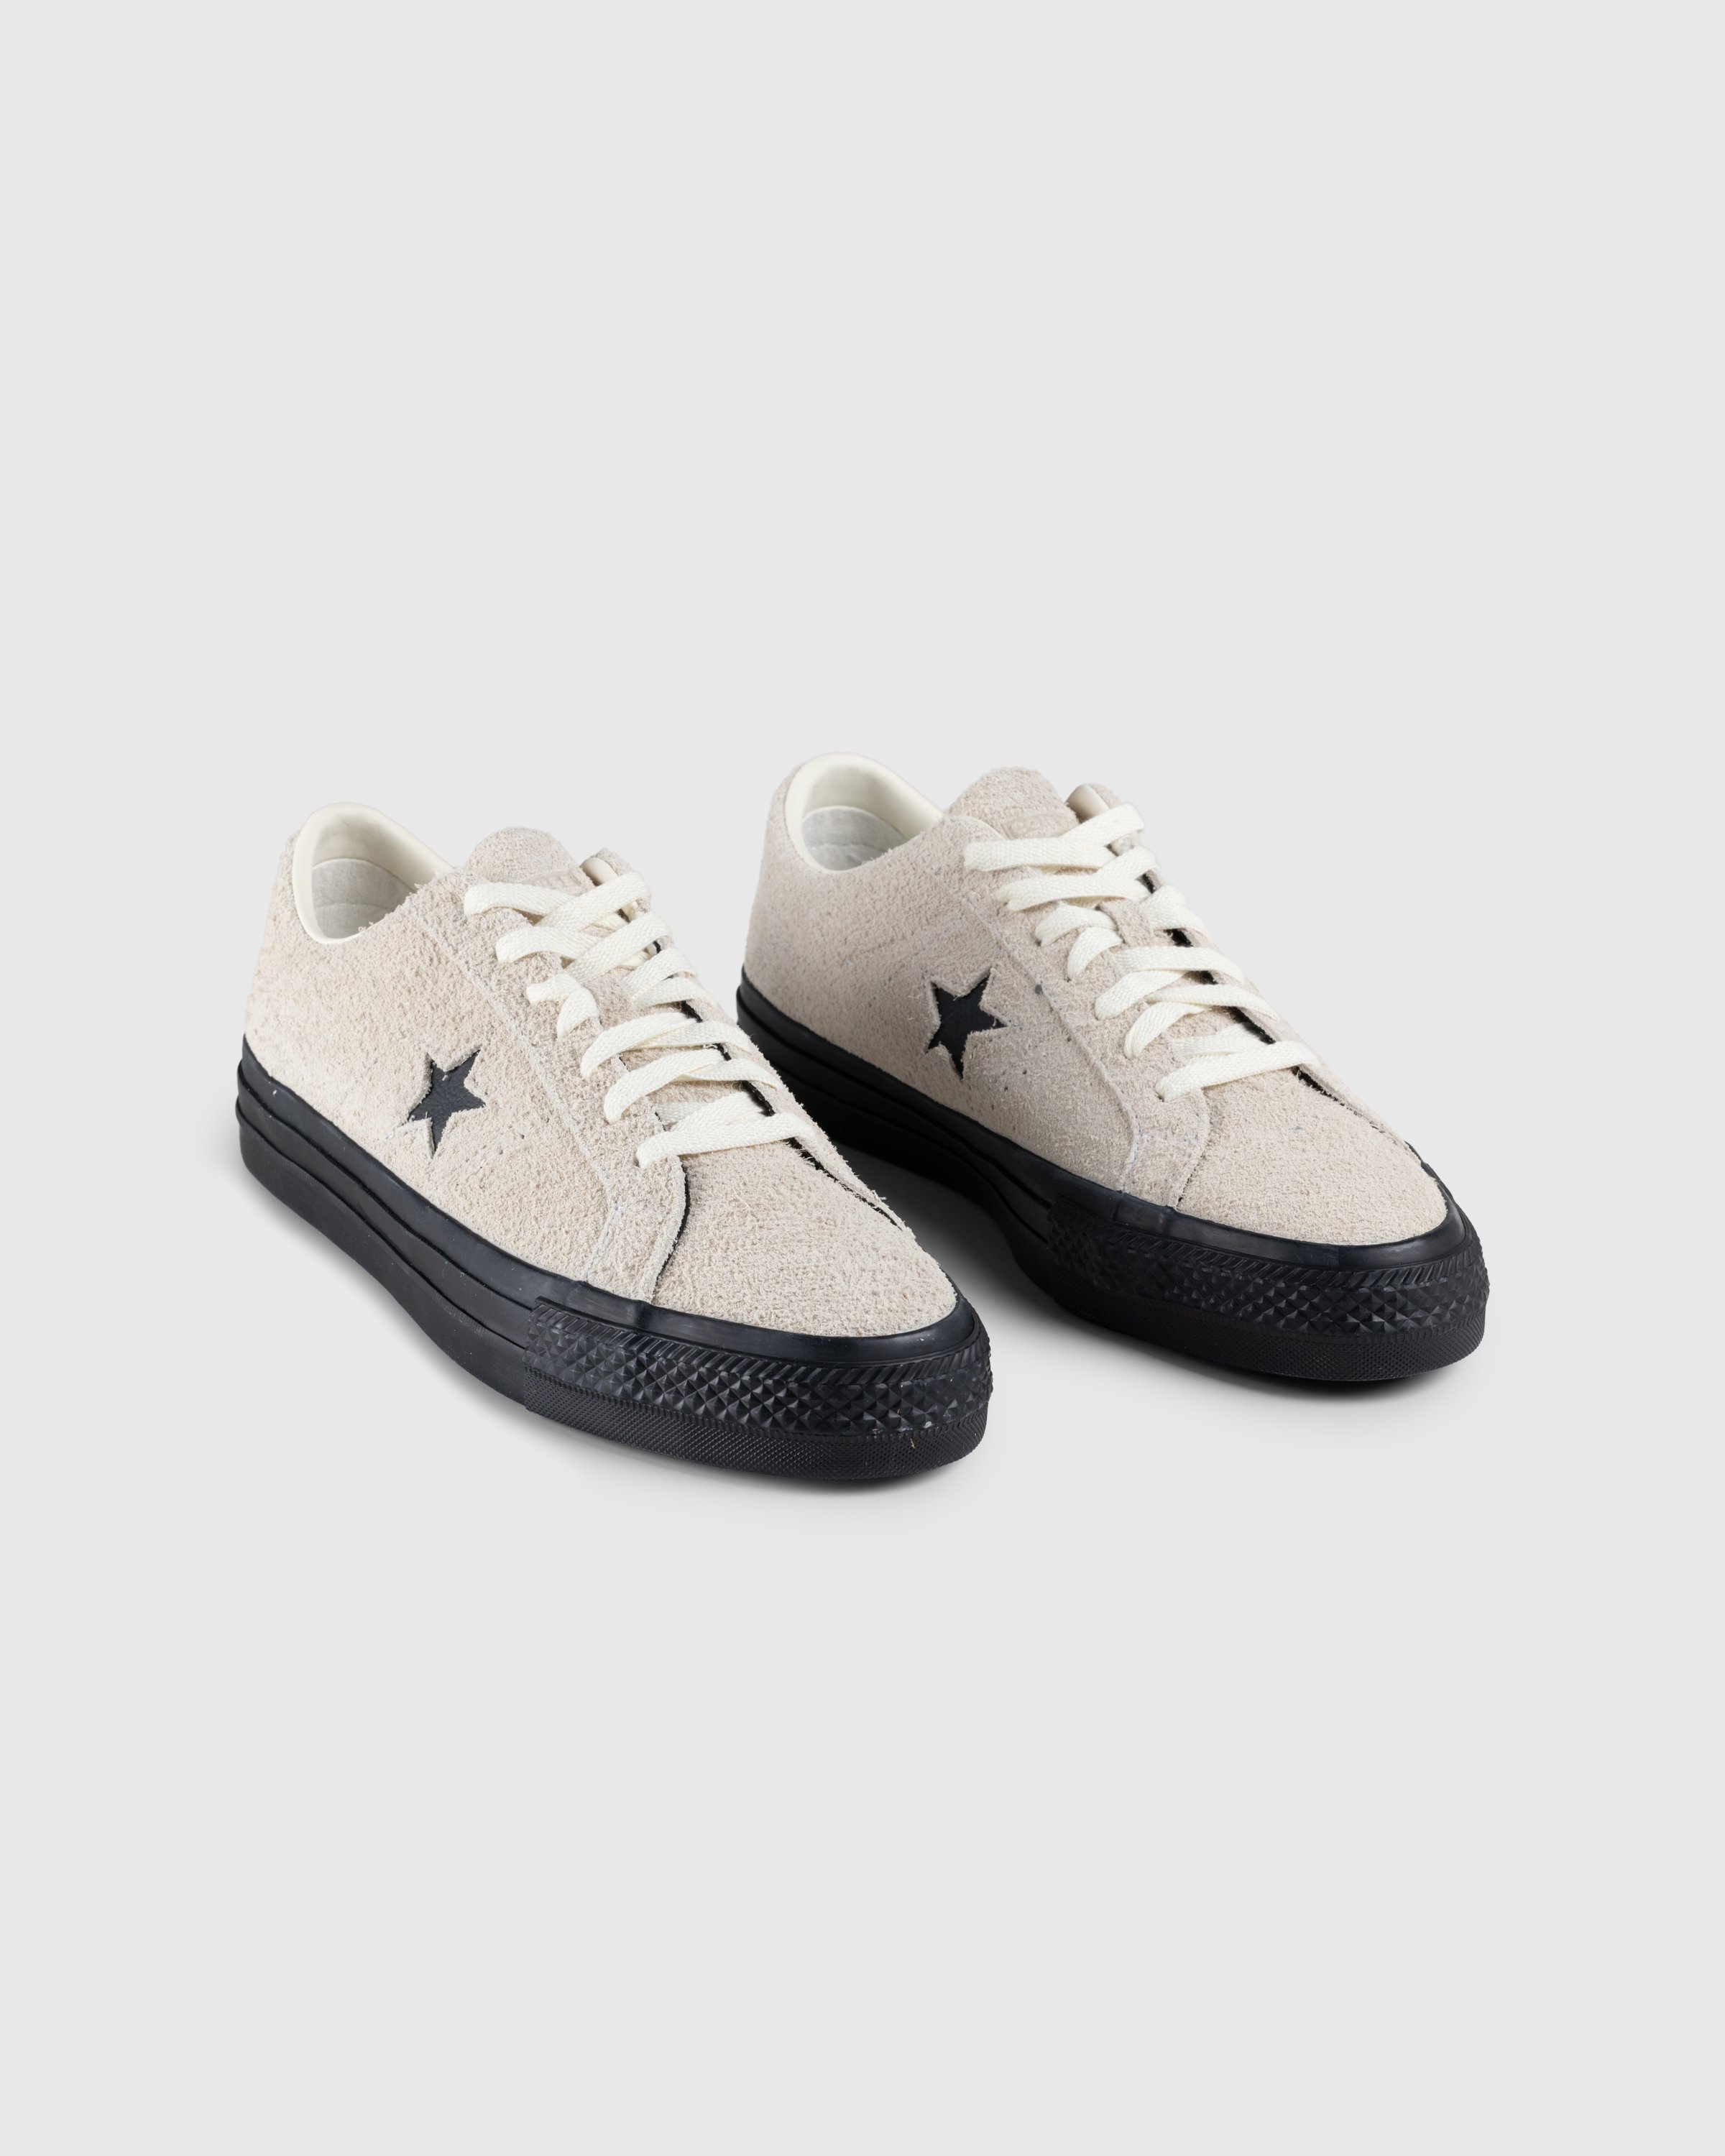 Converse - One Star Pro Ox Egret/Black - Footwear - Beige - Image 3